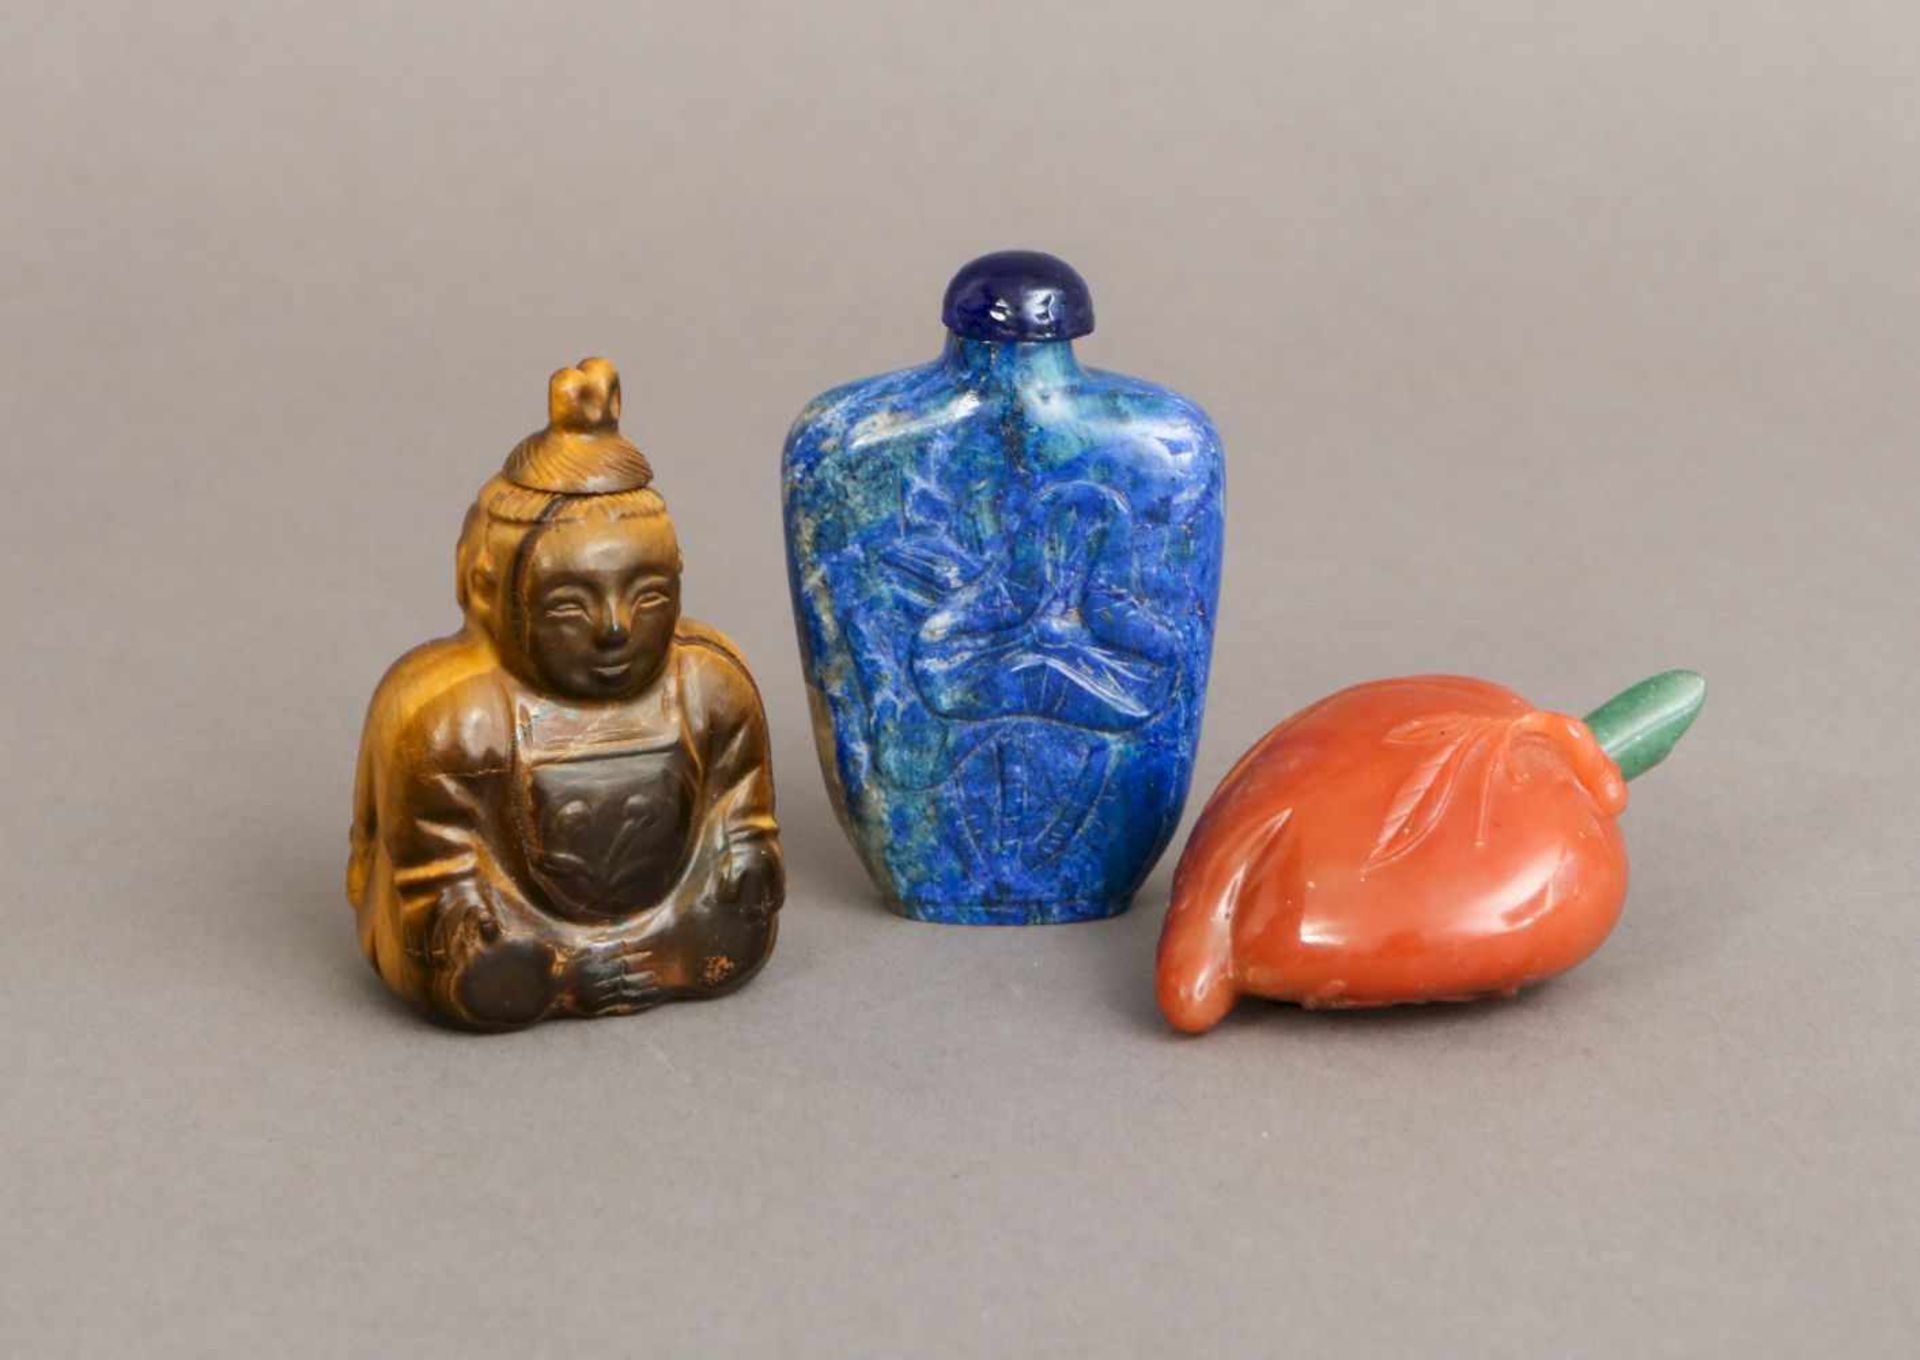 3 chinesische Snuff-bottles, Stein, geschnitzt1x Tigerauge in Form eines Buddhas (beidseitig), 1 x